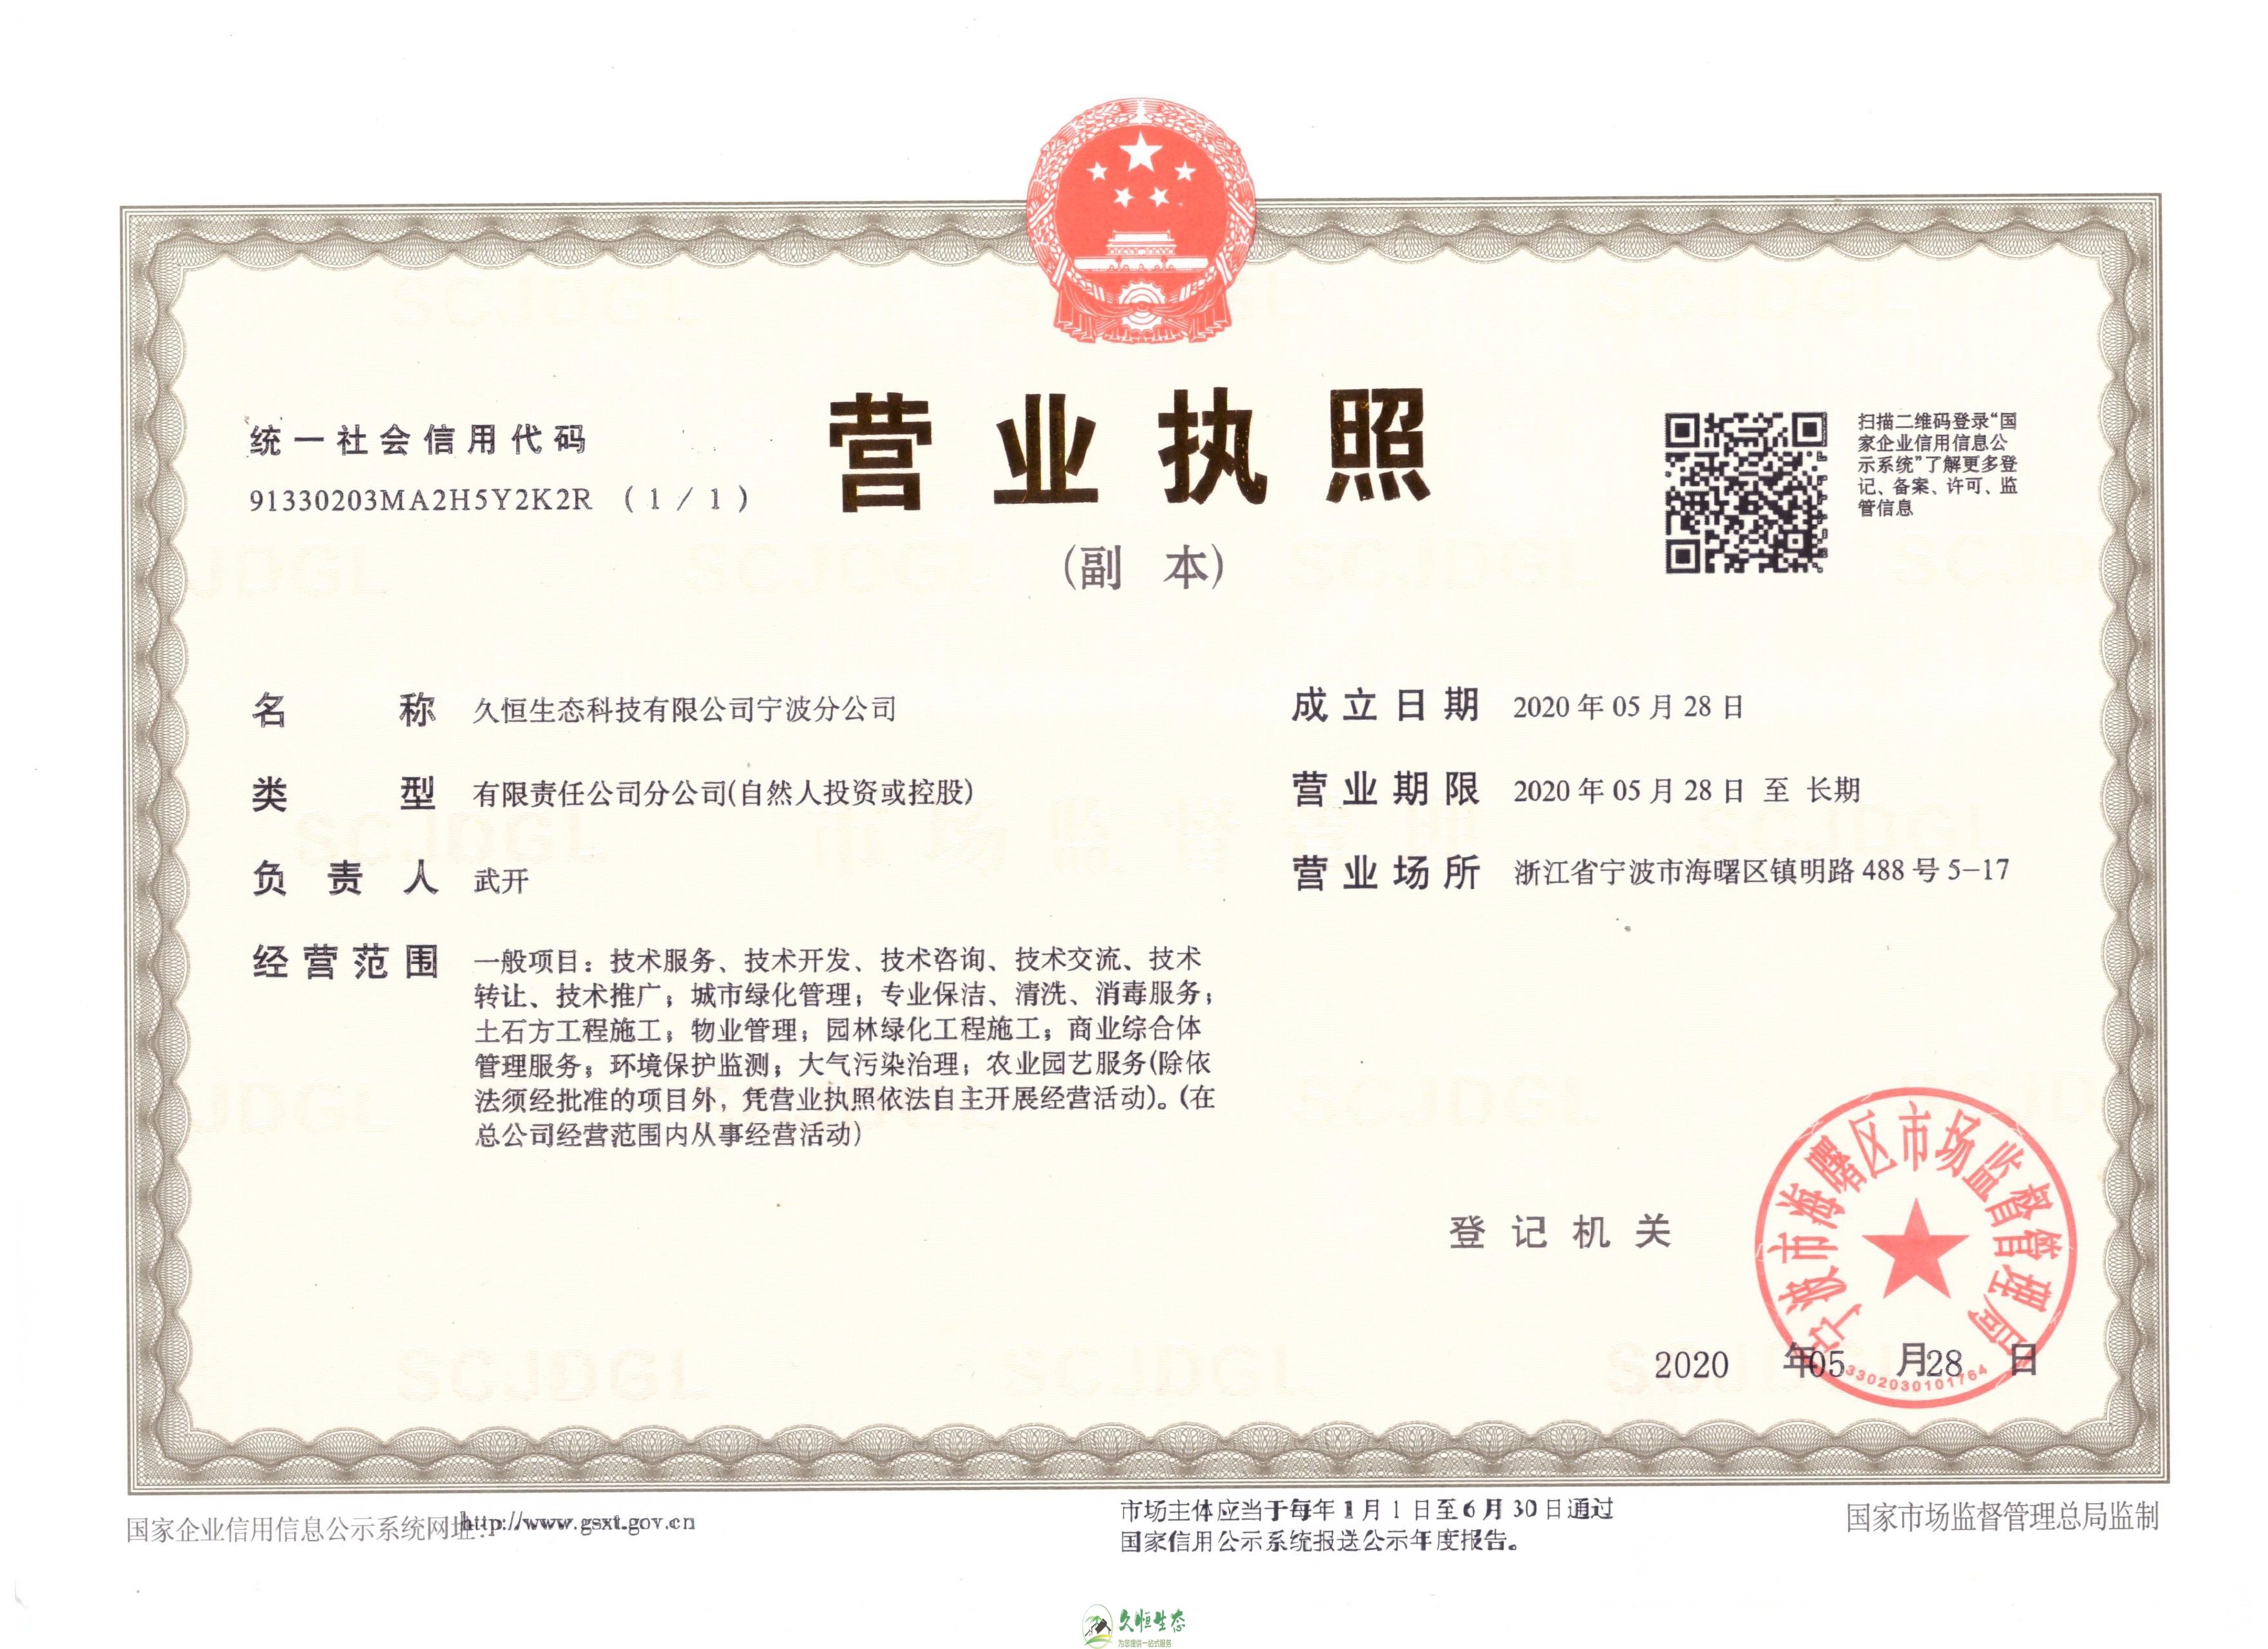 新吴久恒生态宁波分公司2020年5月28日成立